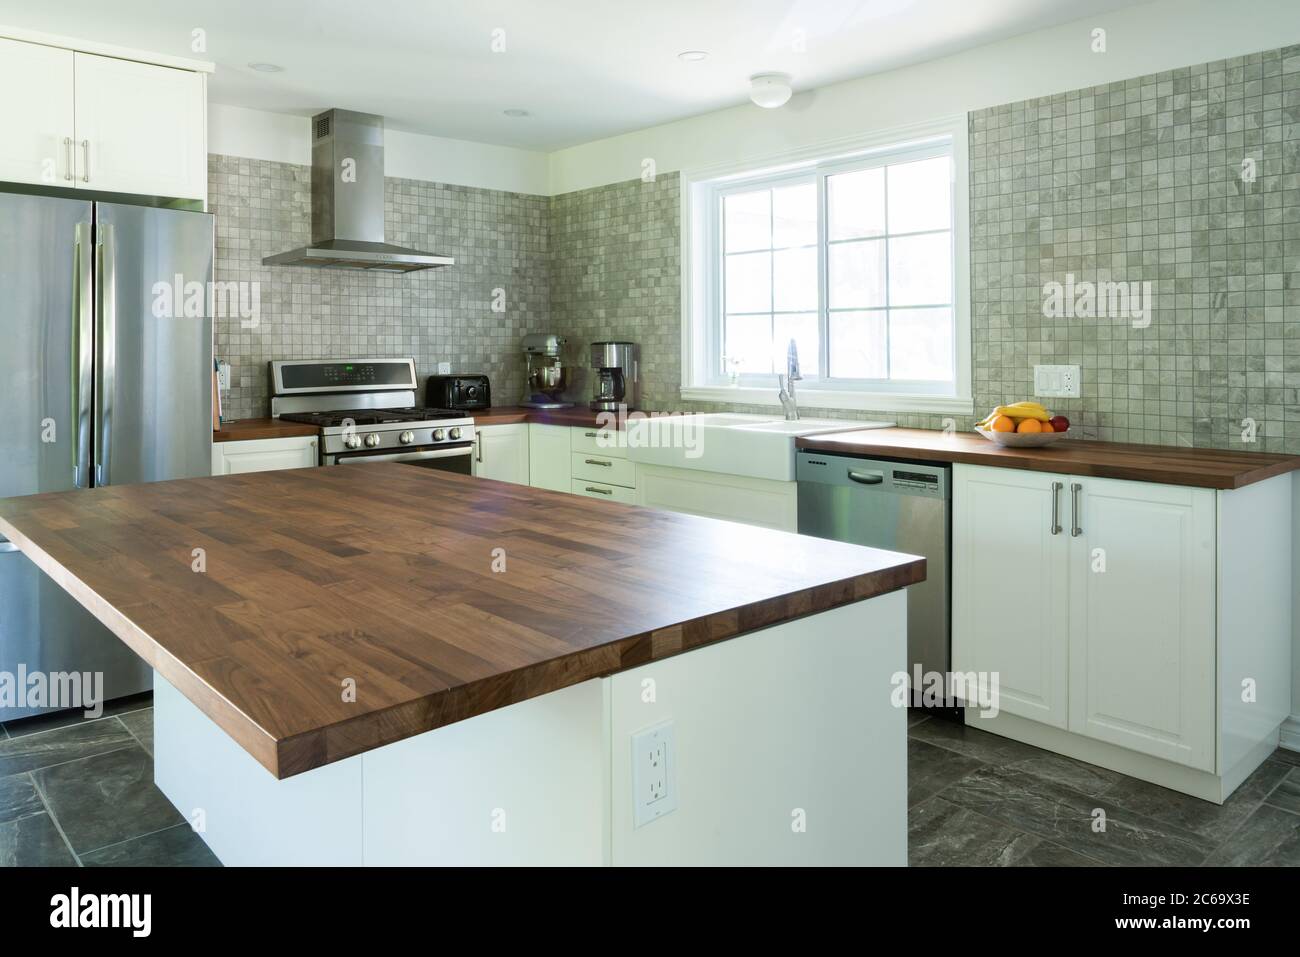 Nouvelle cuisine grise et blanche avec appareils électroménagers et plan de travail en bois Banque D'Images